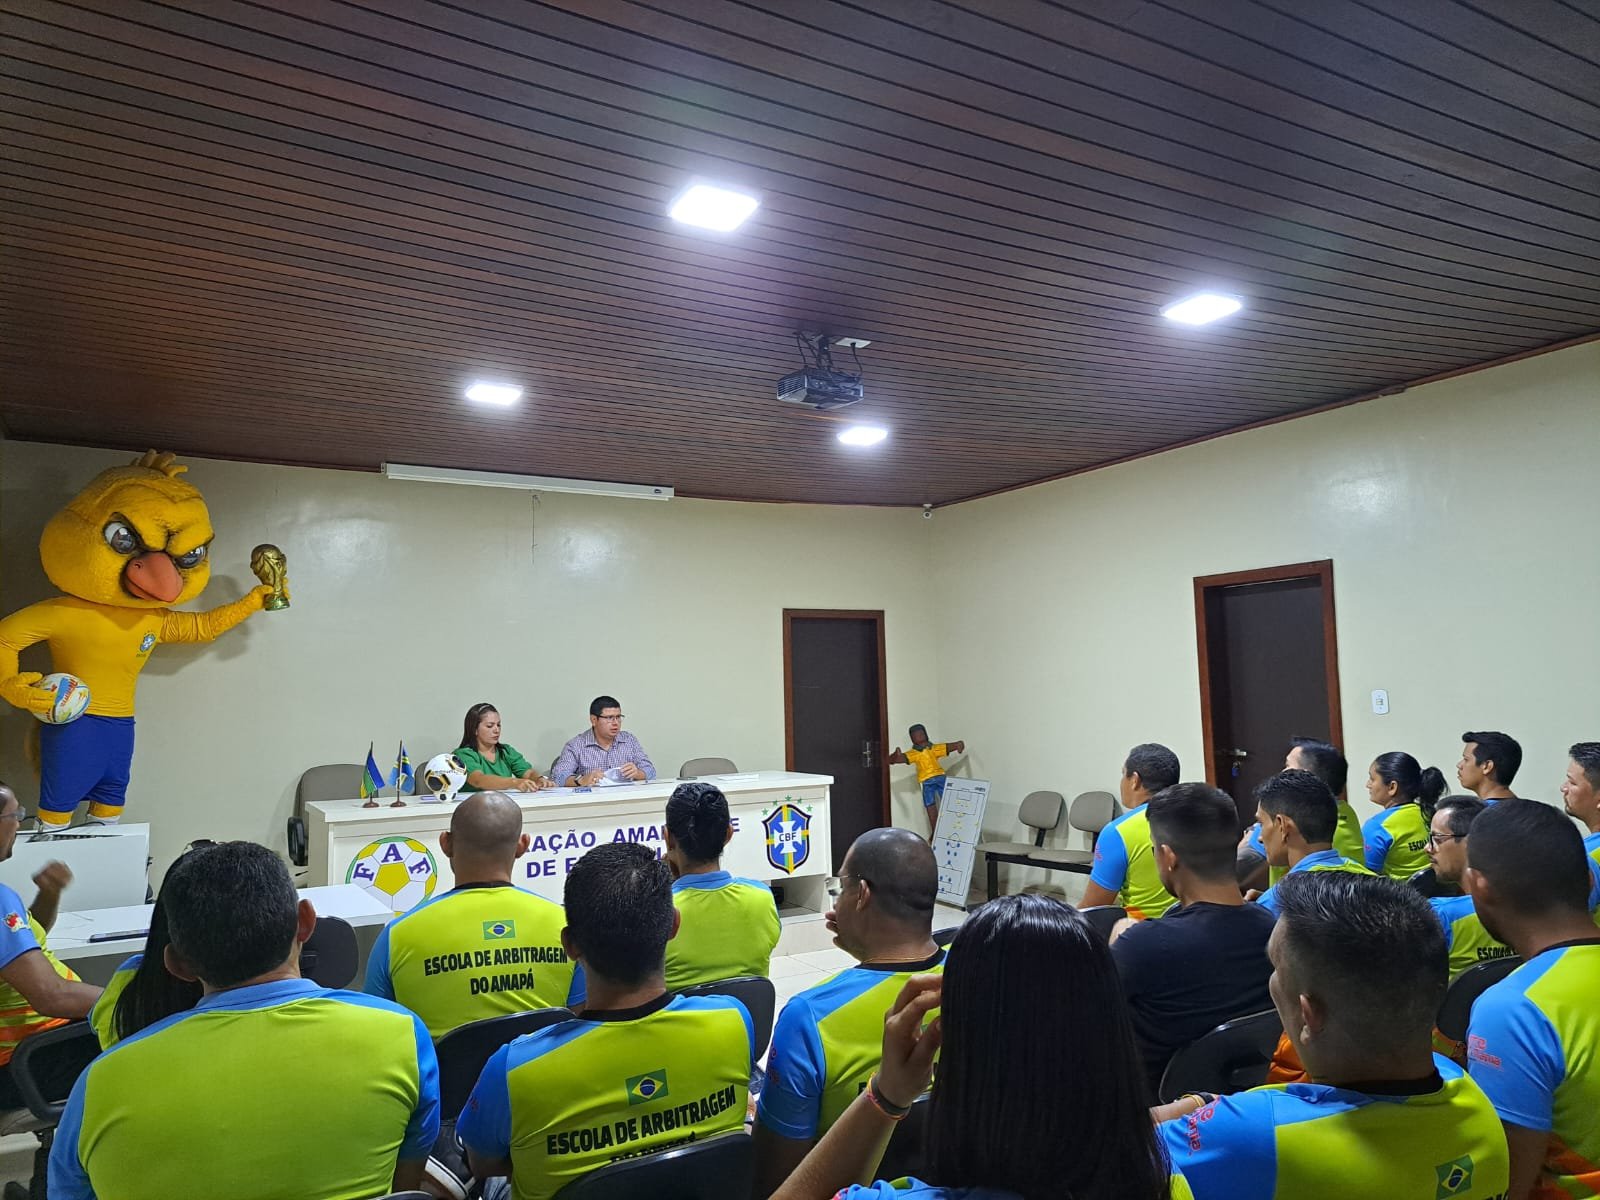 Reunião Define Preparativos para semifinais do Amapazão e Amapazão Feminino